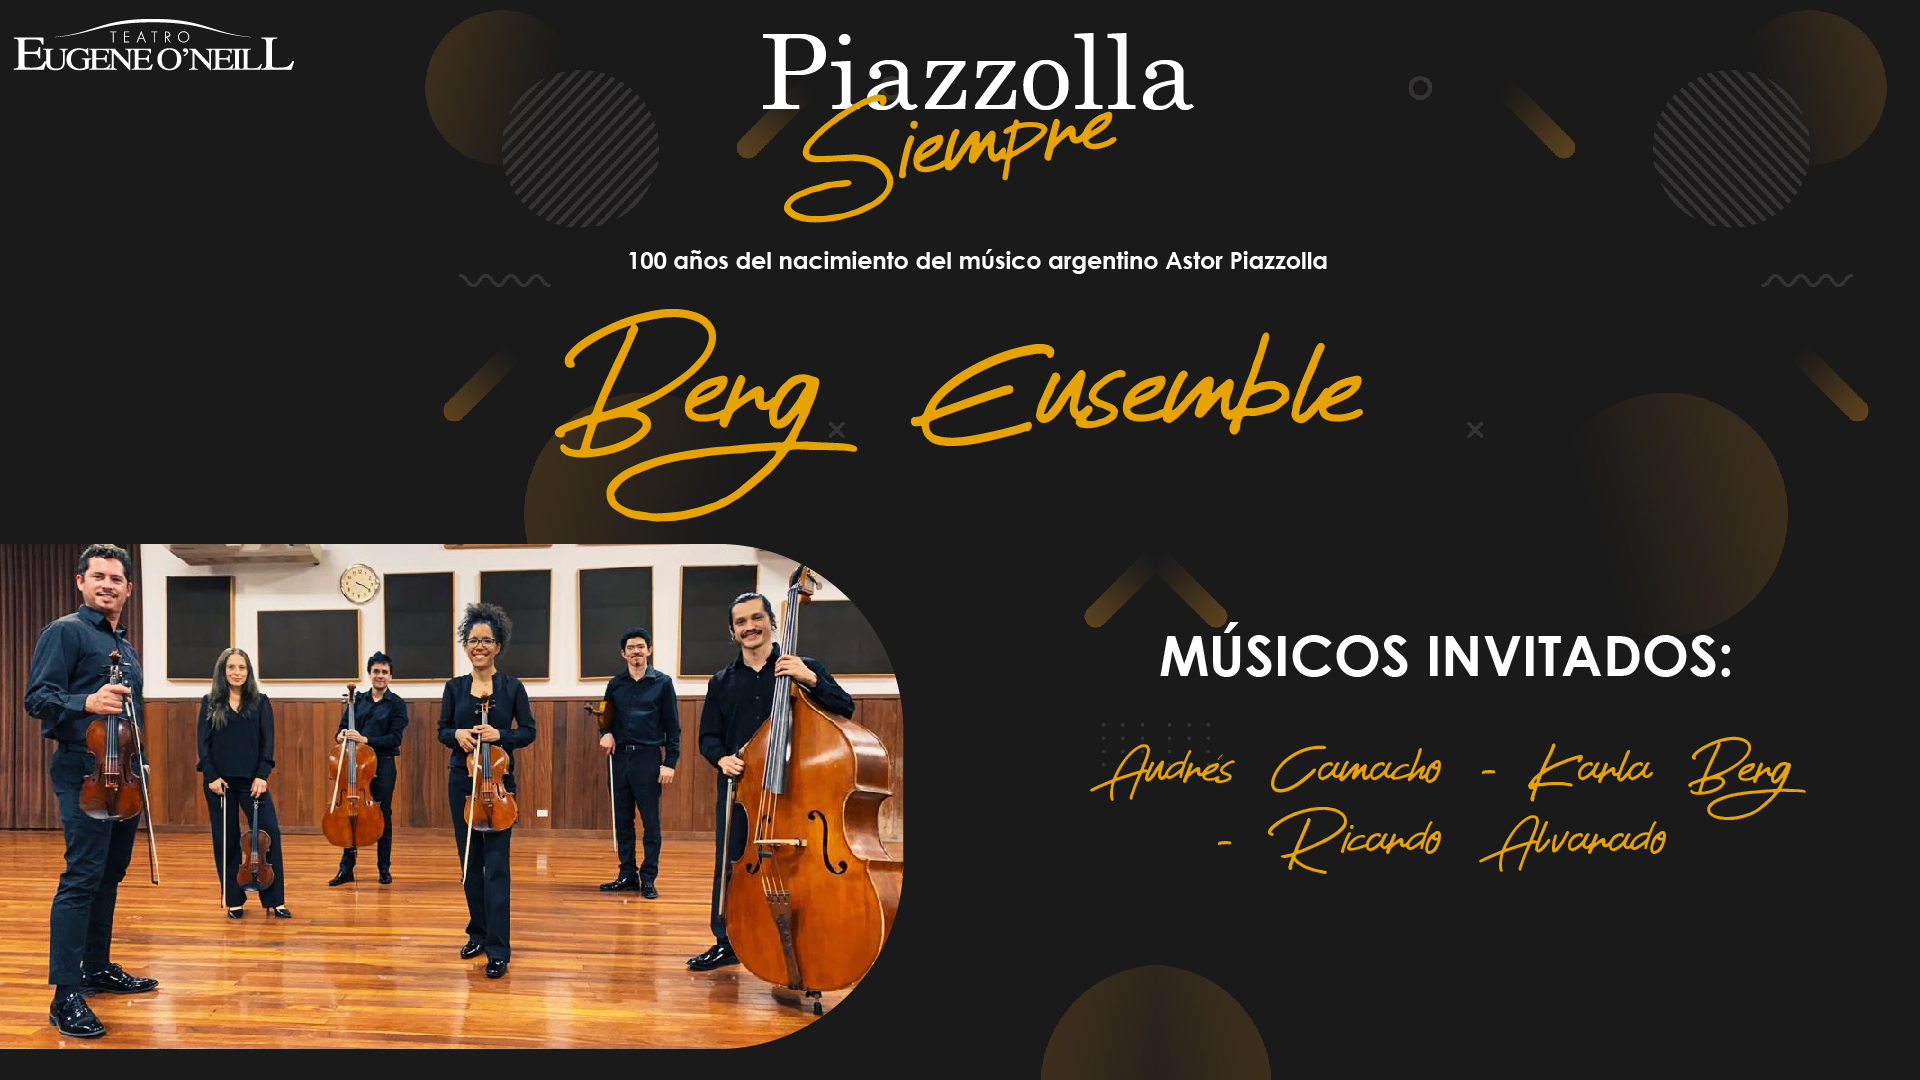 Piazzolla siempre por Berg Ensemble